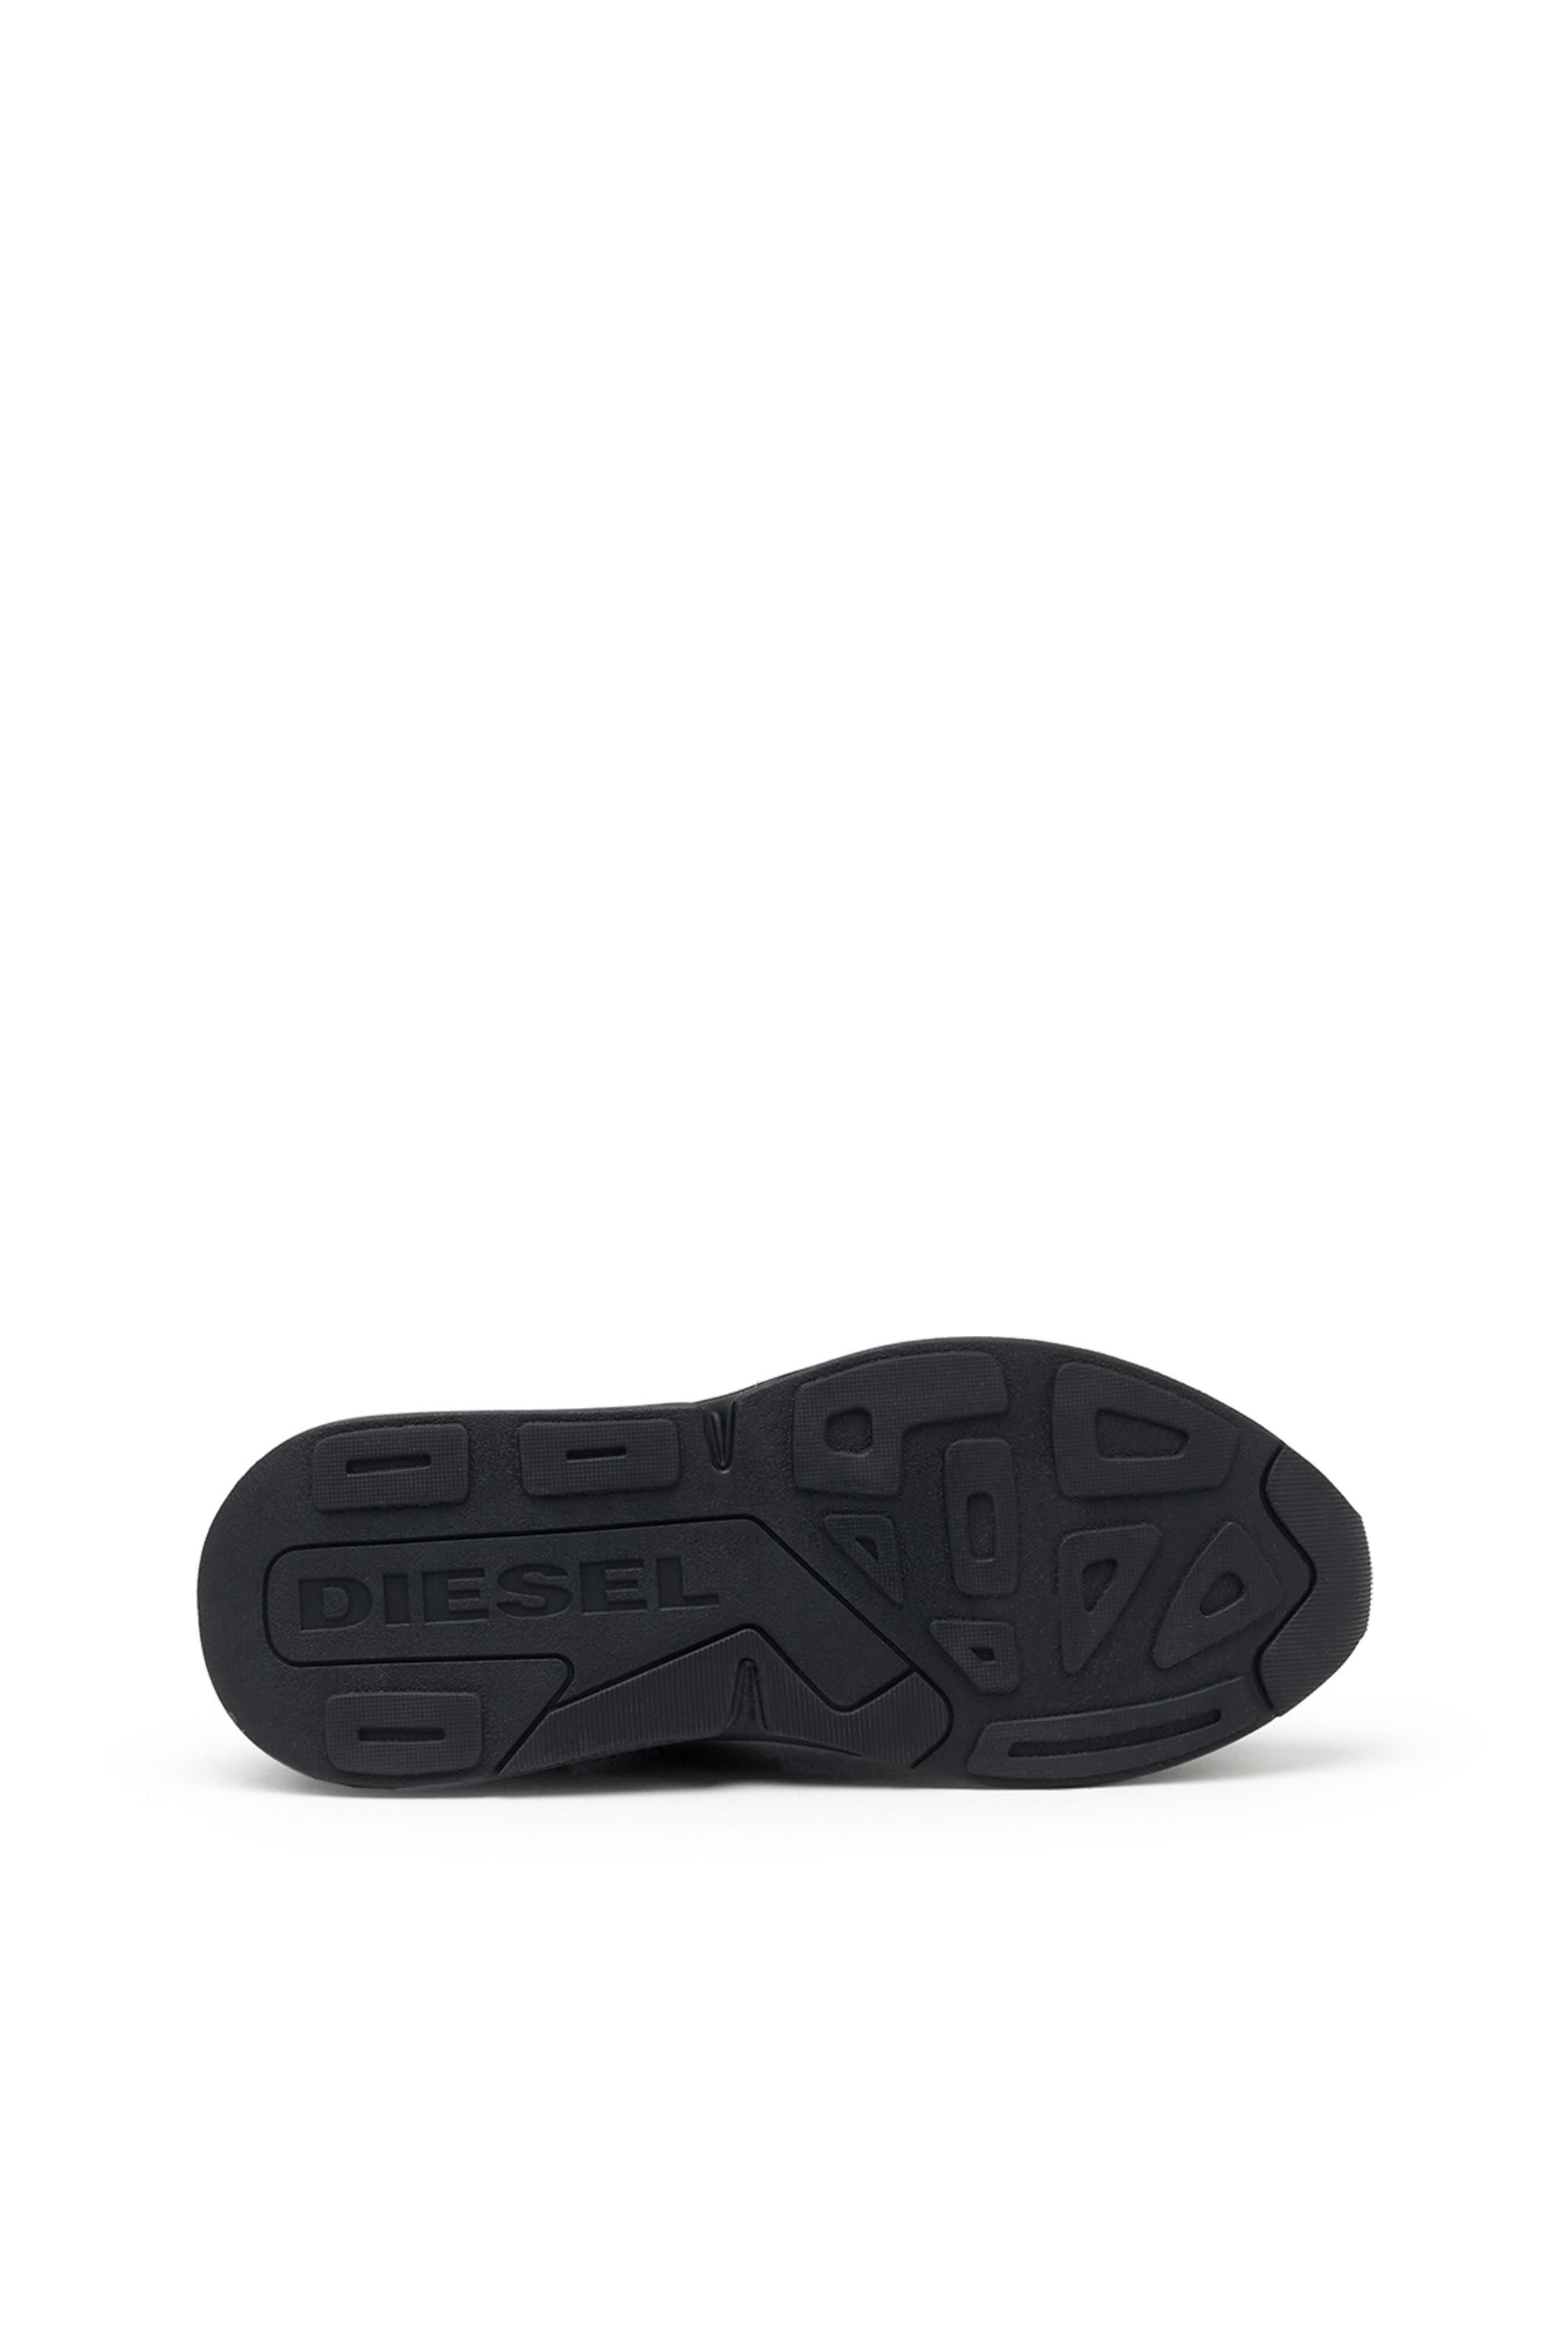 S-SERENDIPITY SPORT: Women's mesh sneakers, chunky sole | Diesel